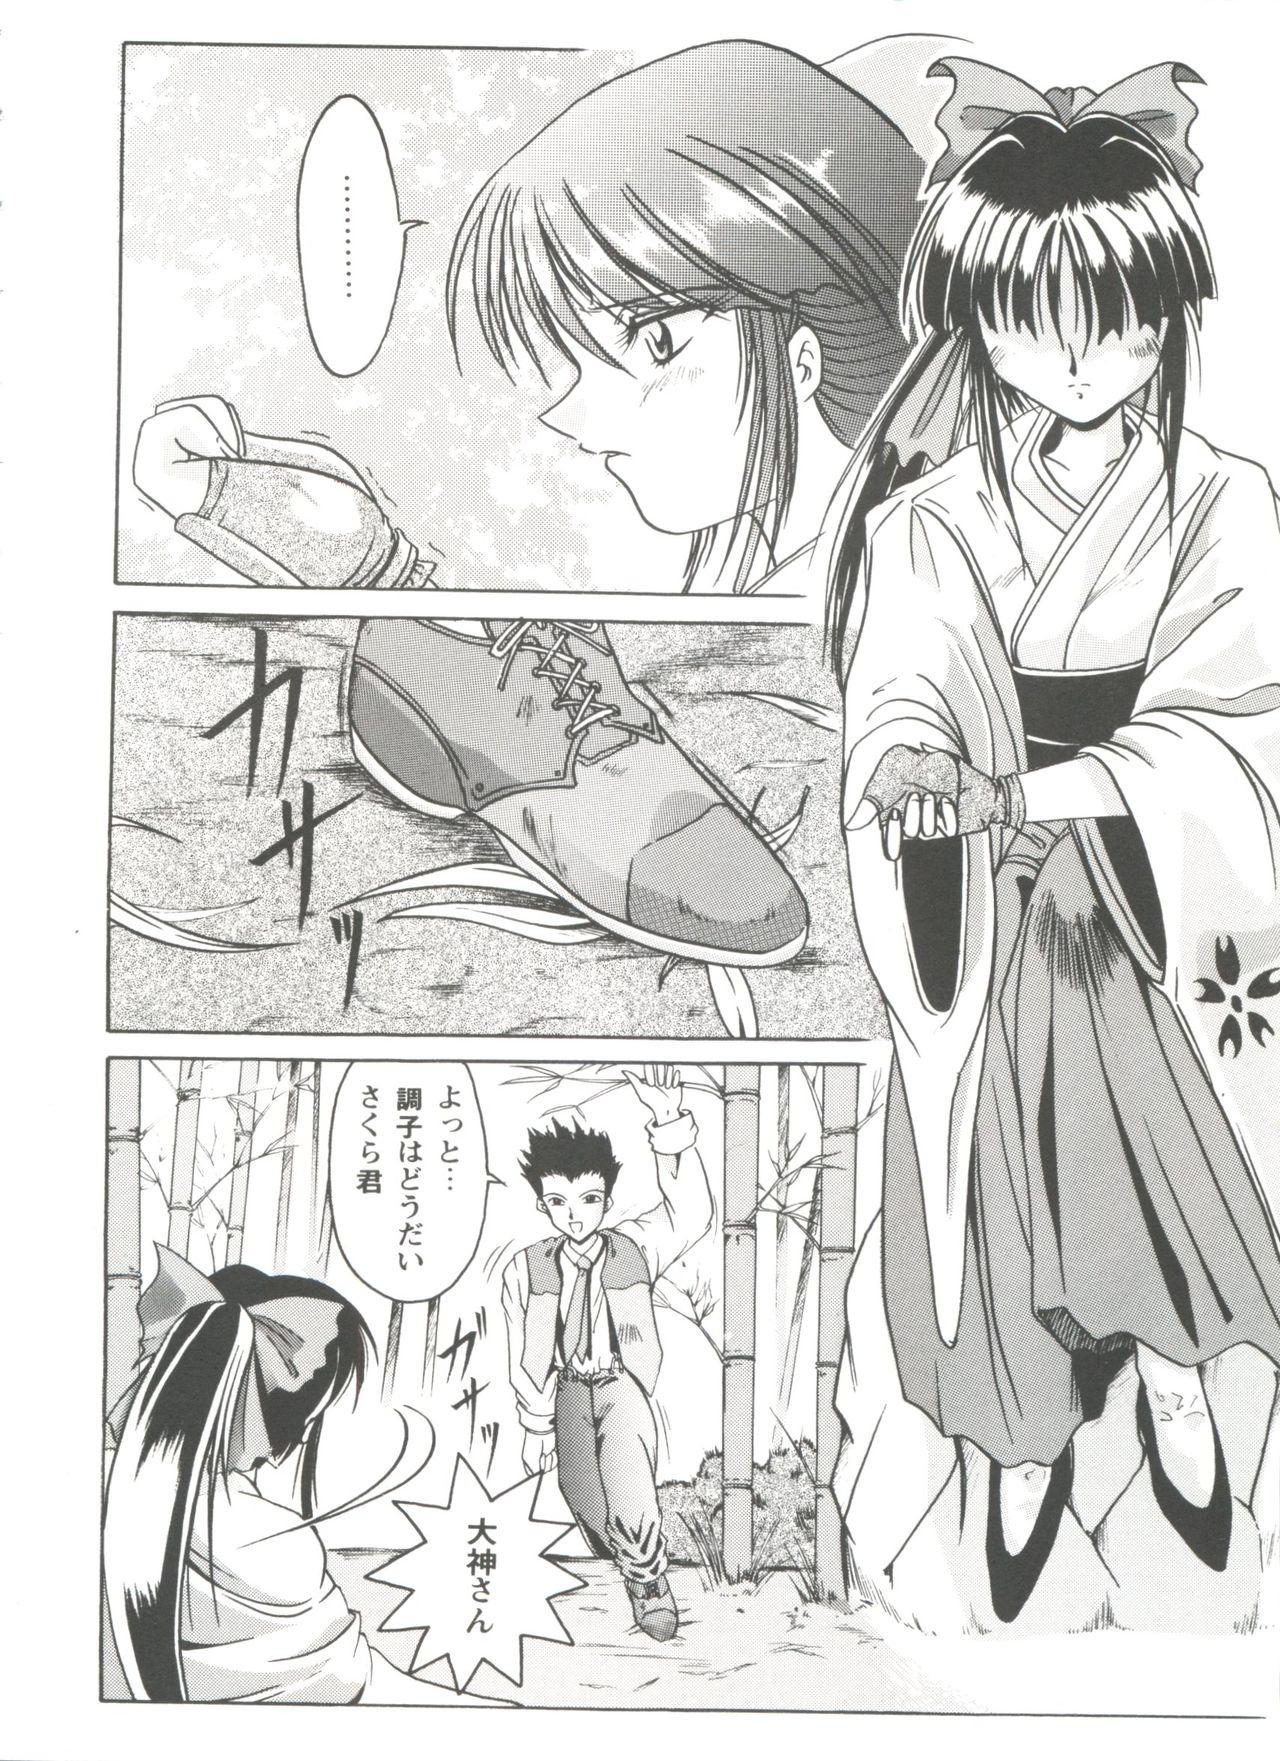 Stepfather Girl's Parade Scene 4 - Sakura taisen Martian successor nadesico Slayers Yu yu hakusho Threeway - Page 7